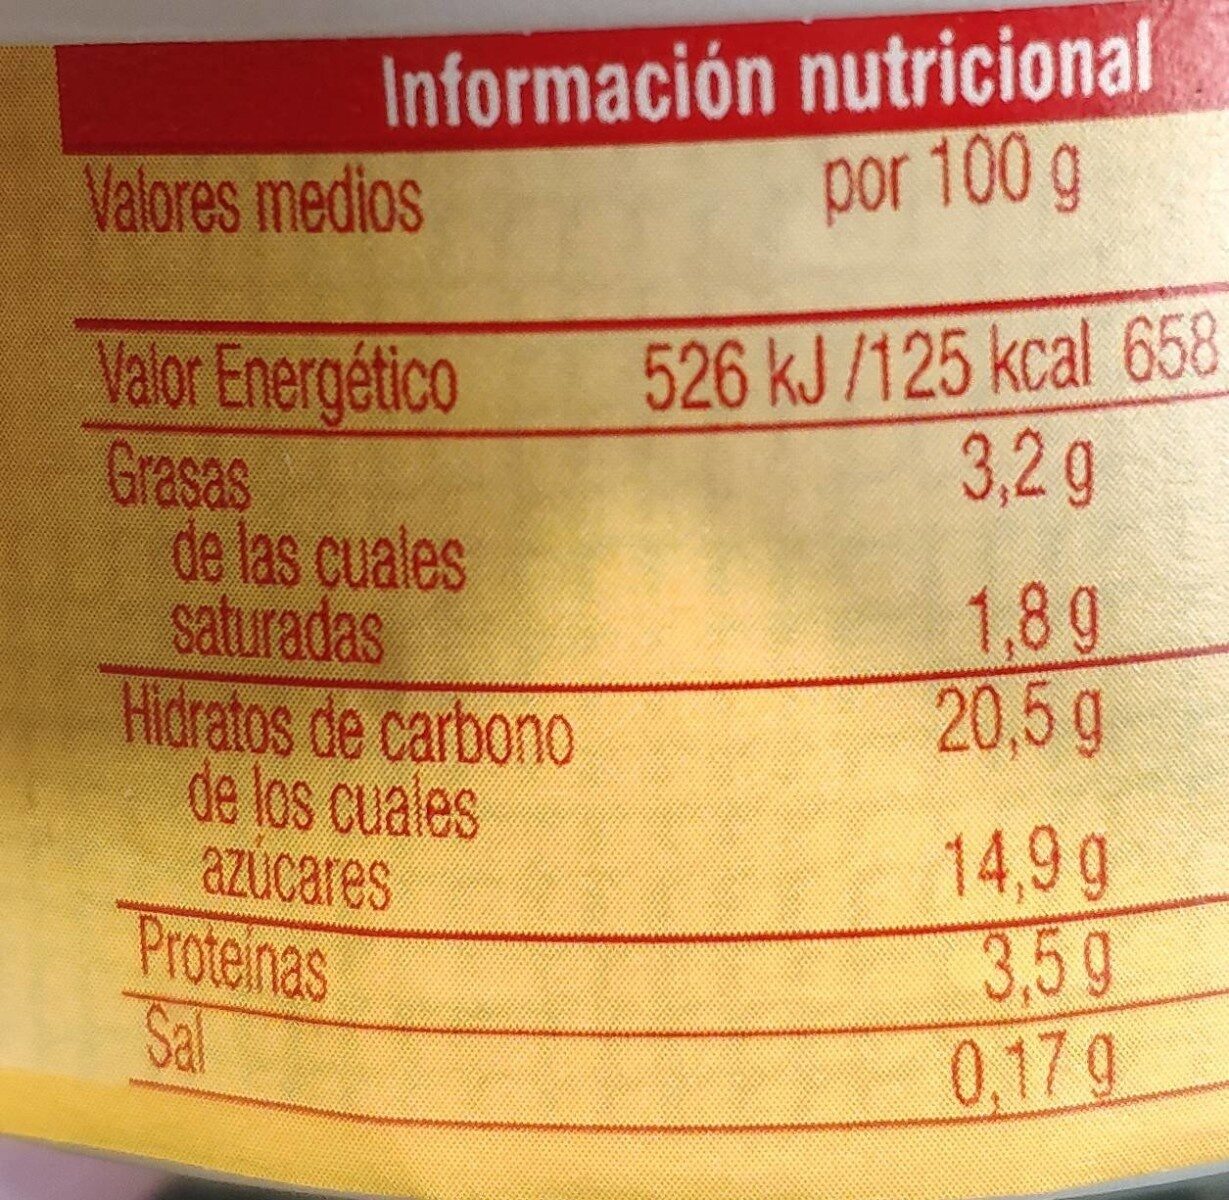 Natillas con galleta - Nutrition facts - es